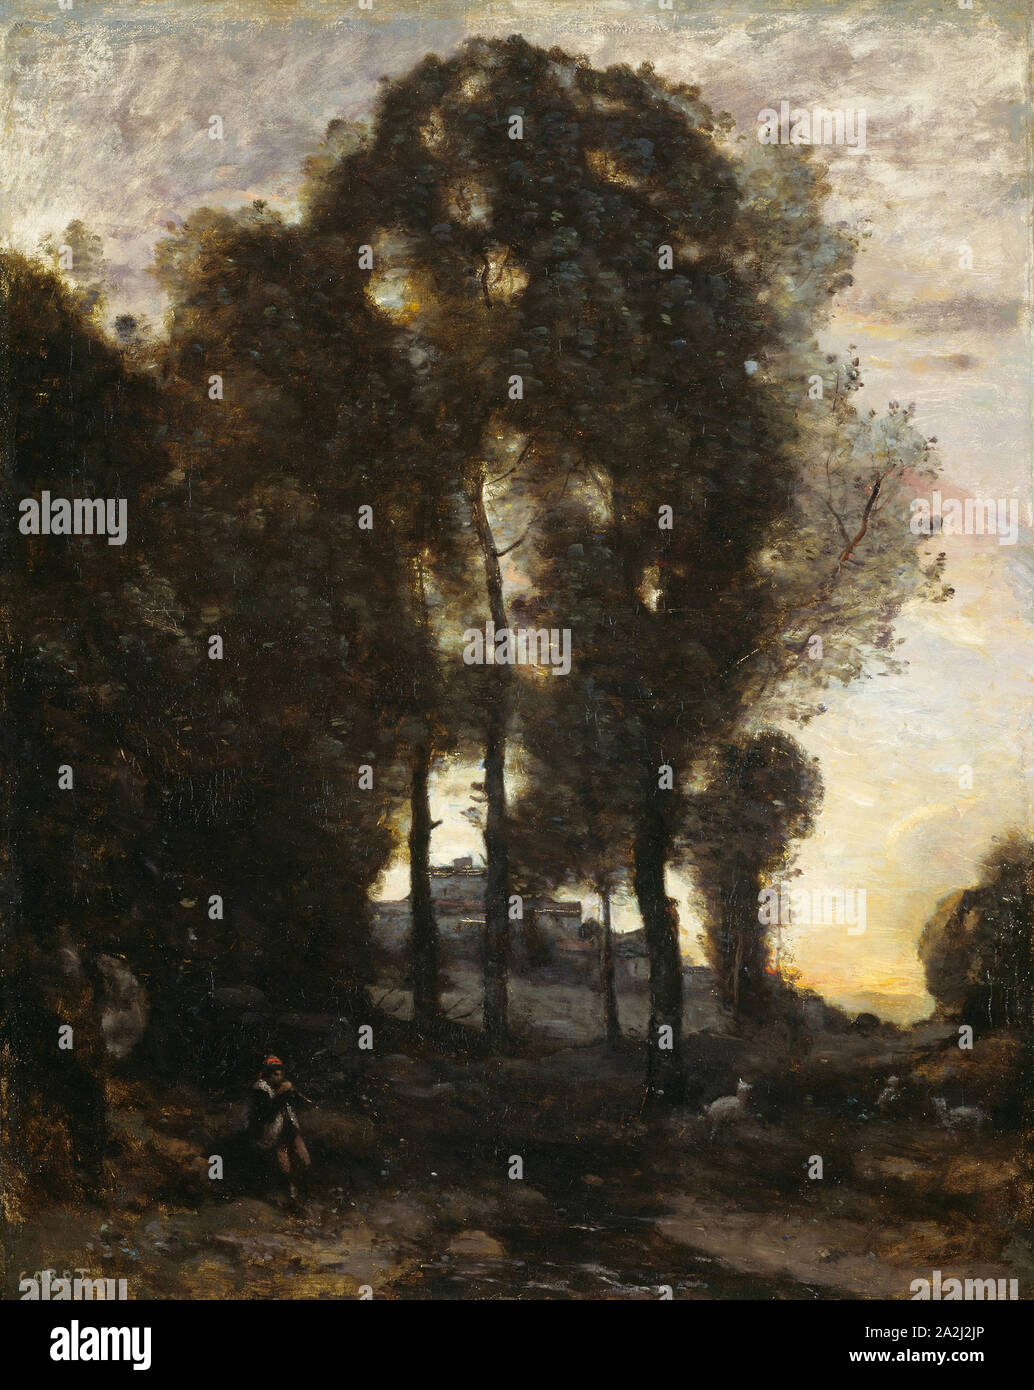 Souvenir aus Italien, 1855/60, Jean-Baptiste-Camille Corot, Französisch, 1796-1875, Frankreich, Öl auf Leinwand, 82,6 × 66,4 cm (32 1/2 x 26 1/8 in. Stockfoto